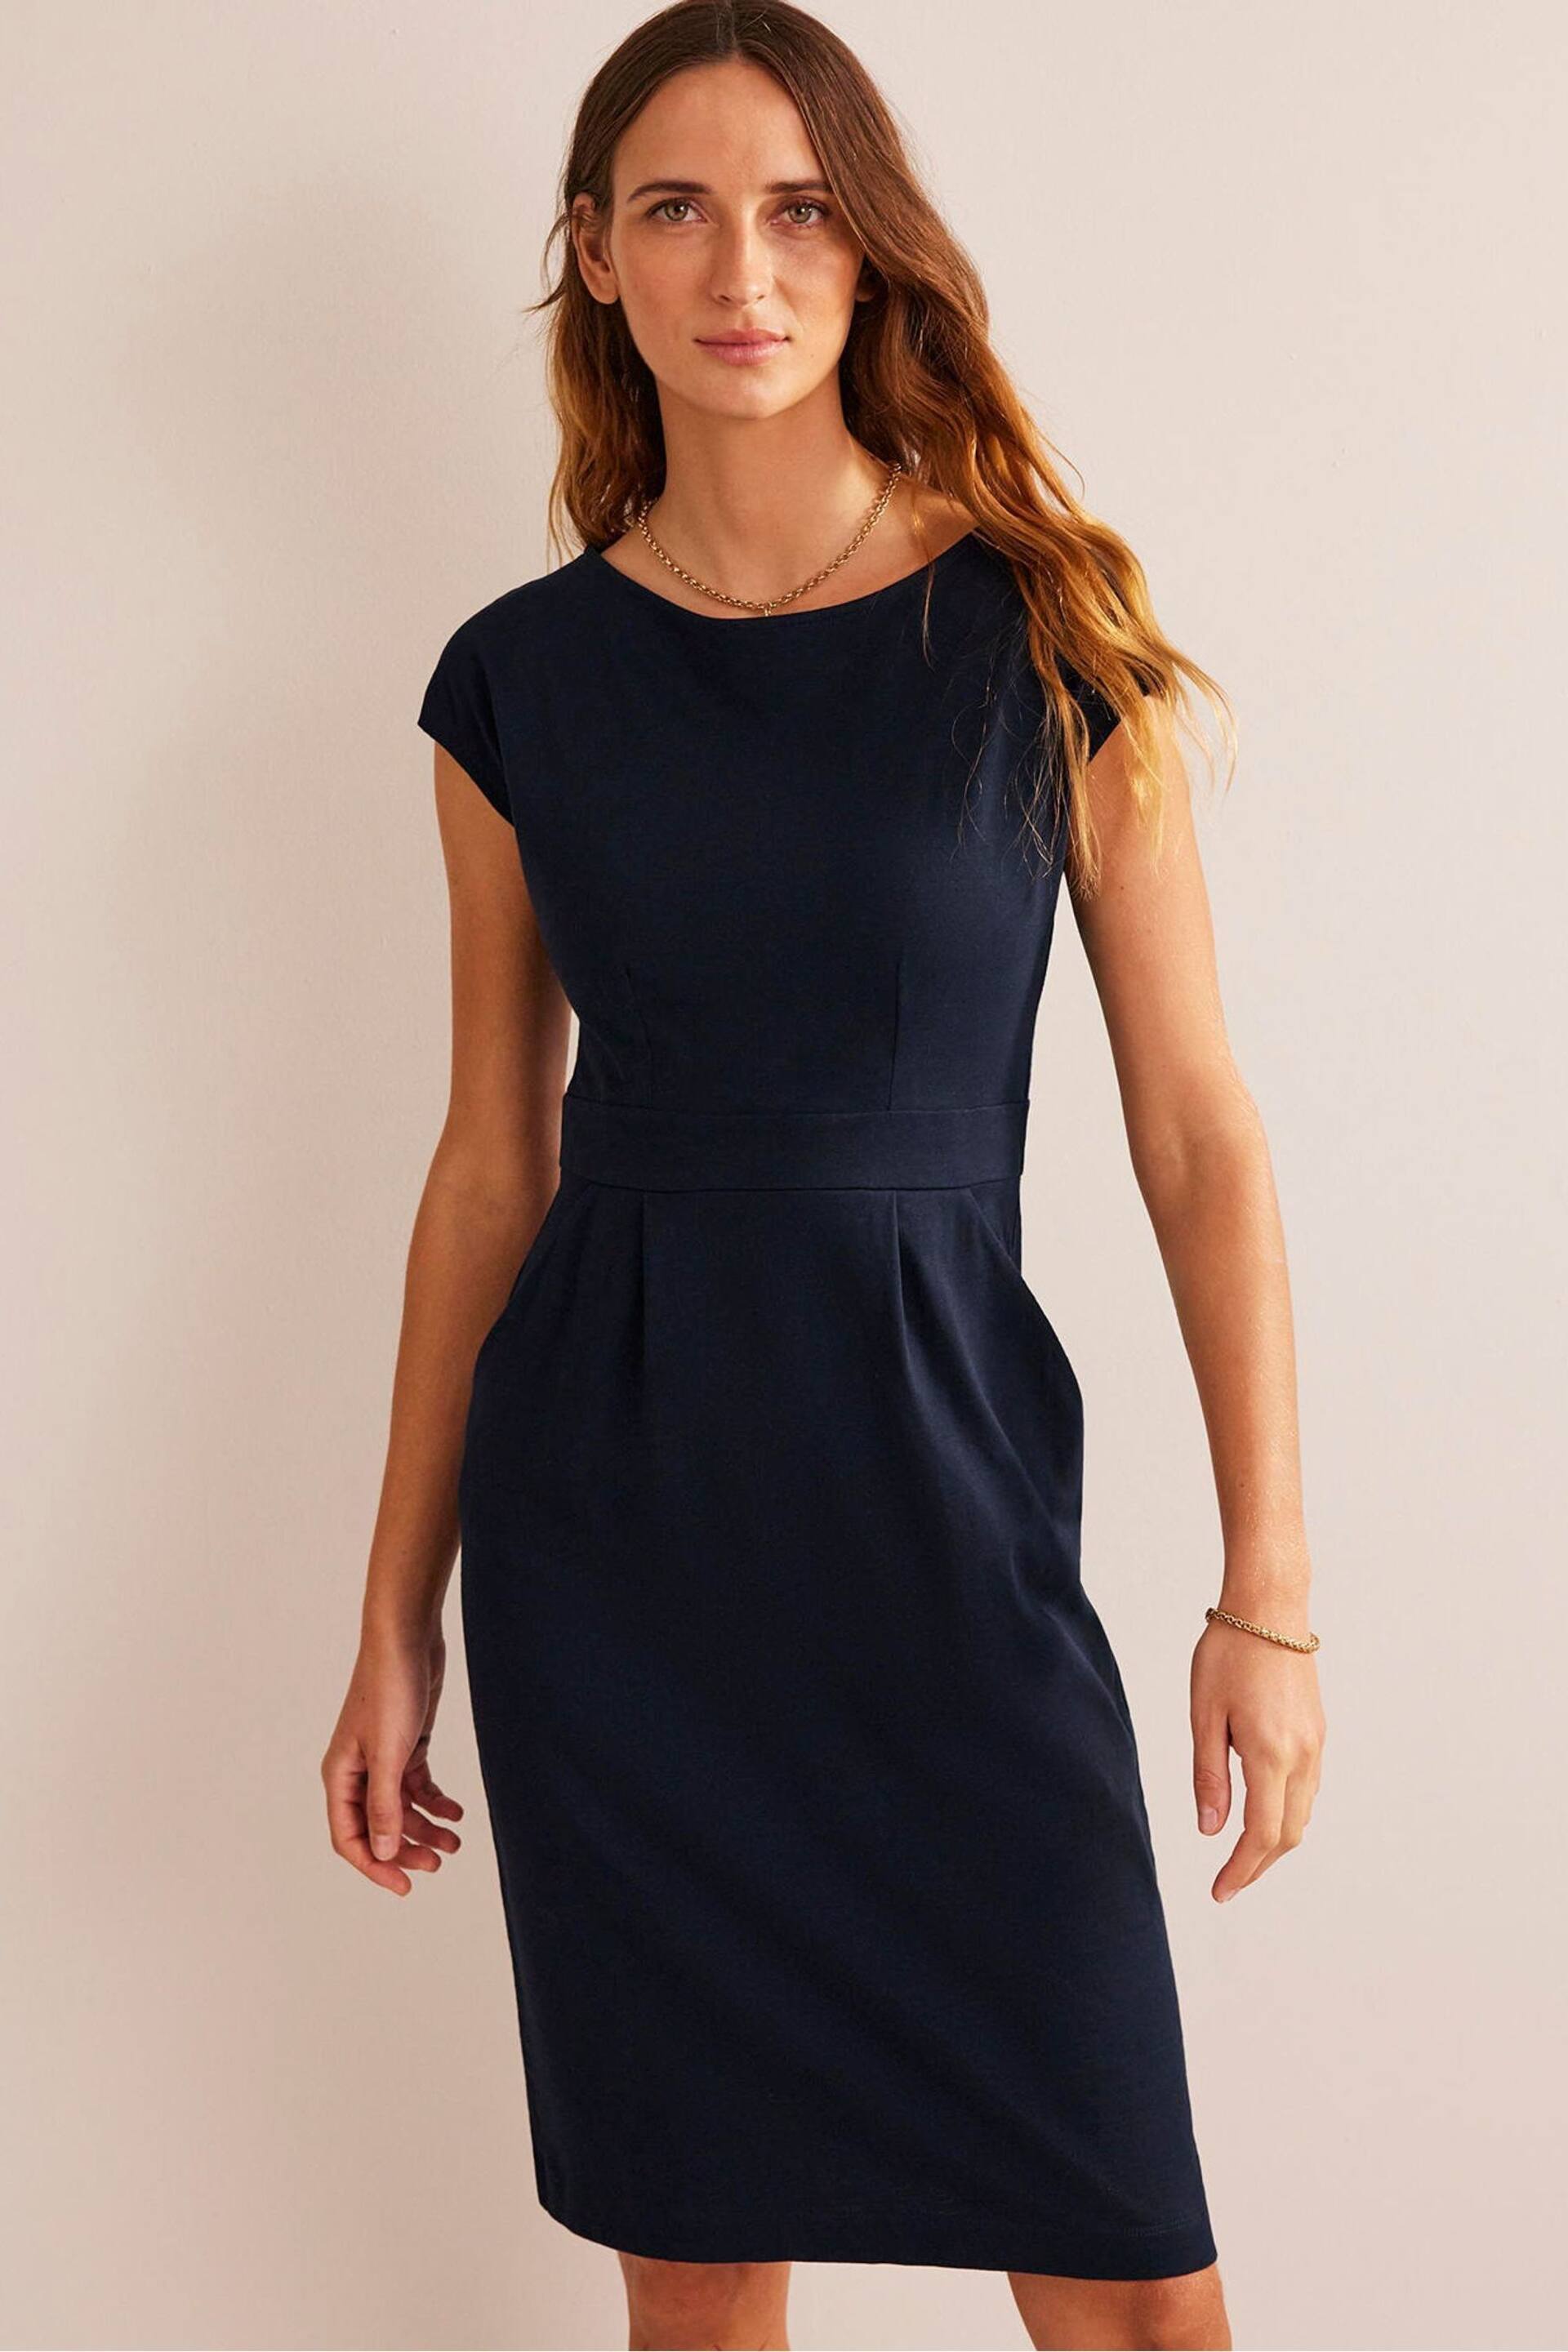 Boden Blue Black Florrie Jersey Dress - Image 1 of 4